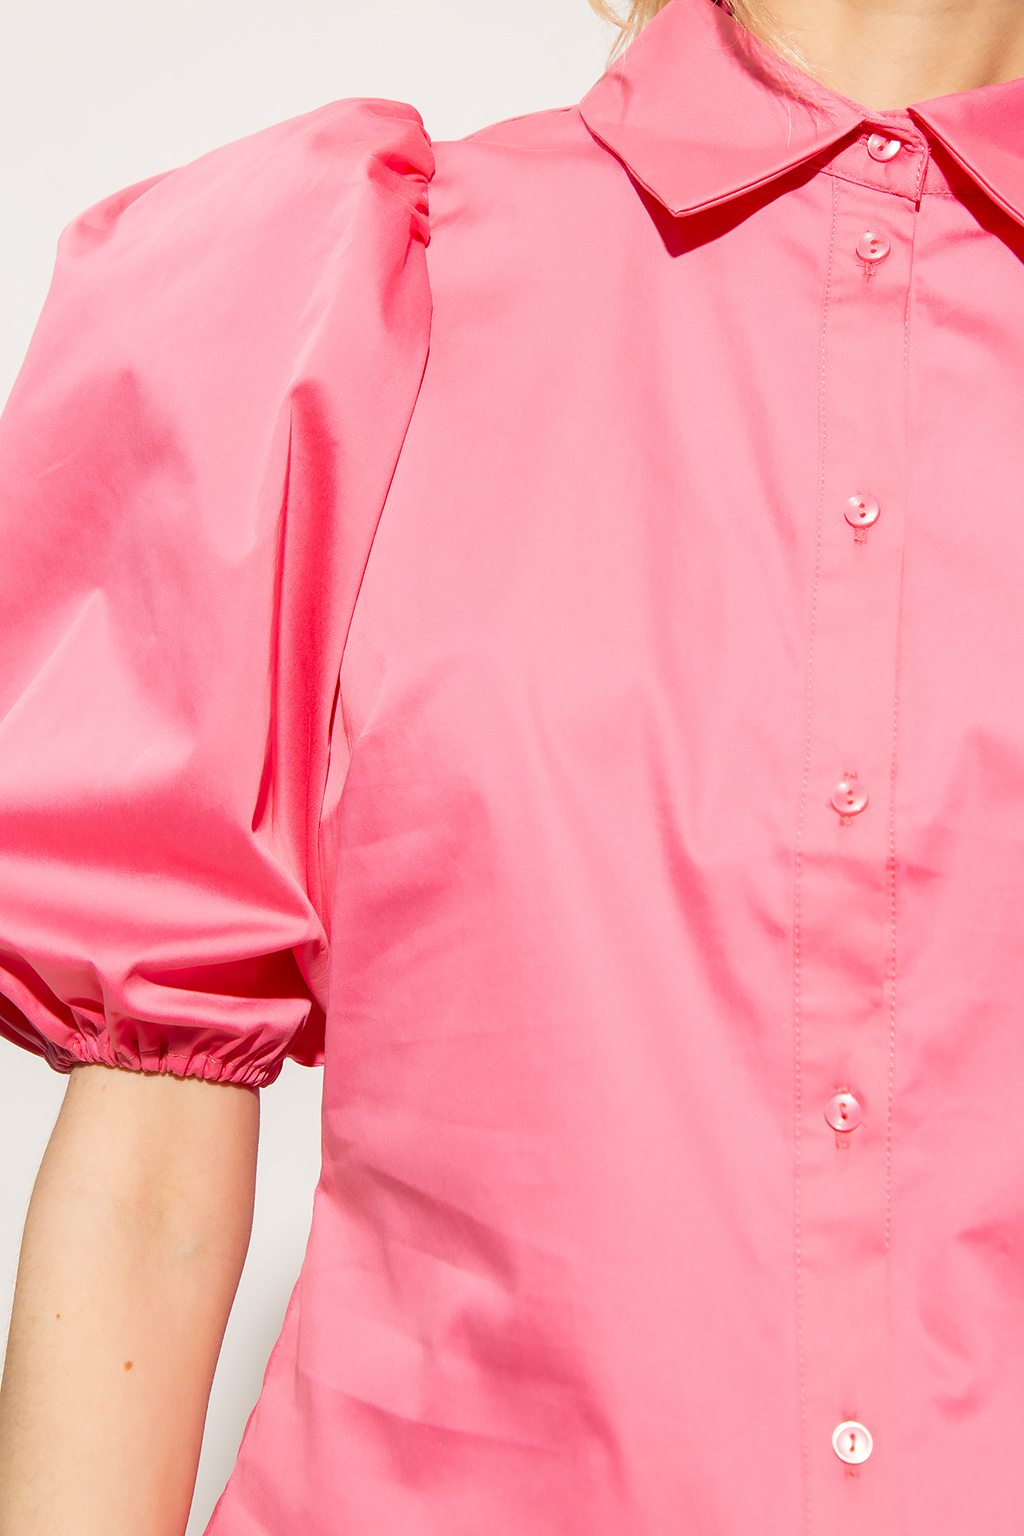 Polo Ralph Lauren® logo on the upper left side of the jacket ‘Kira’ shirt